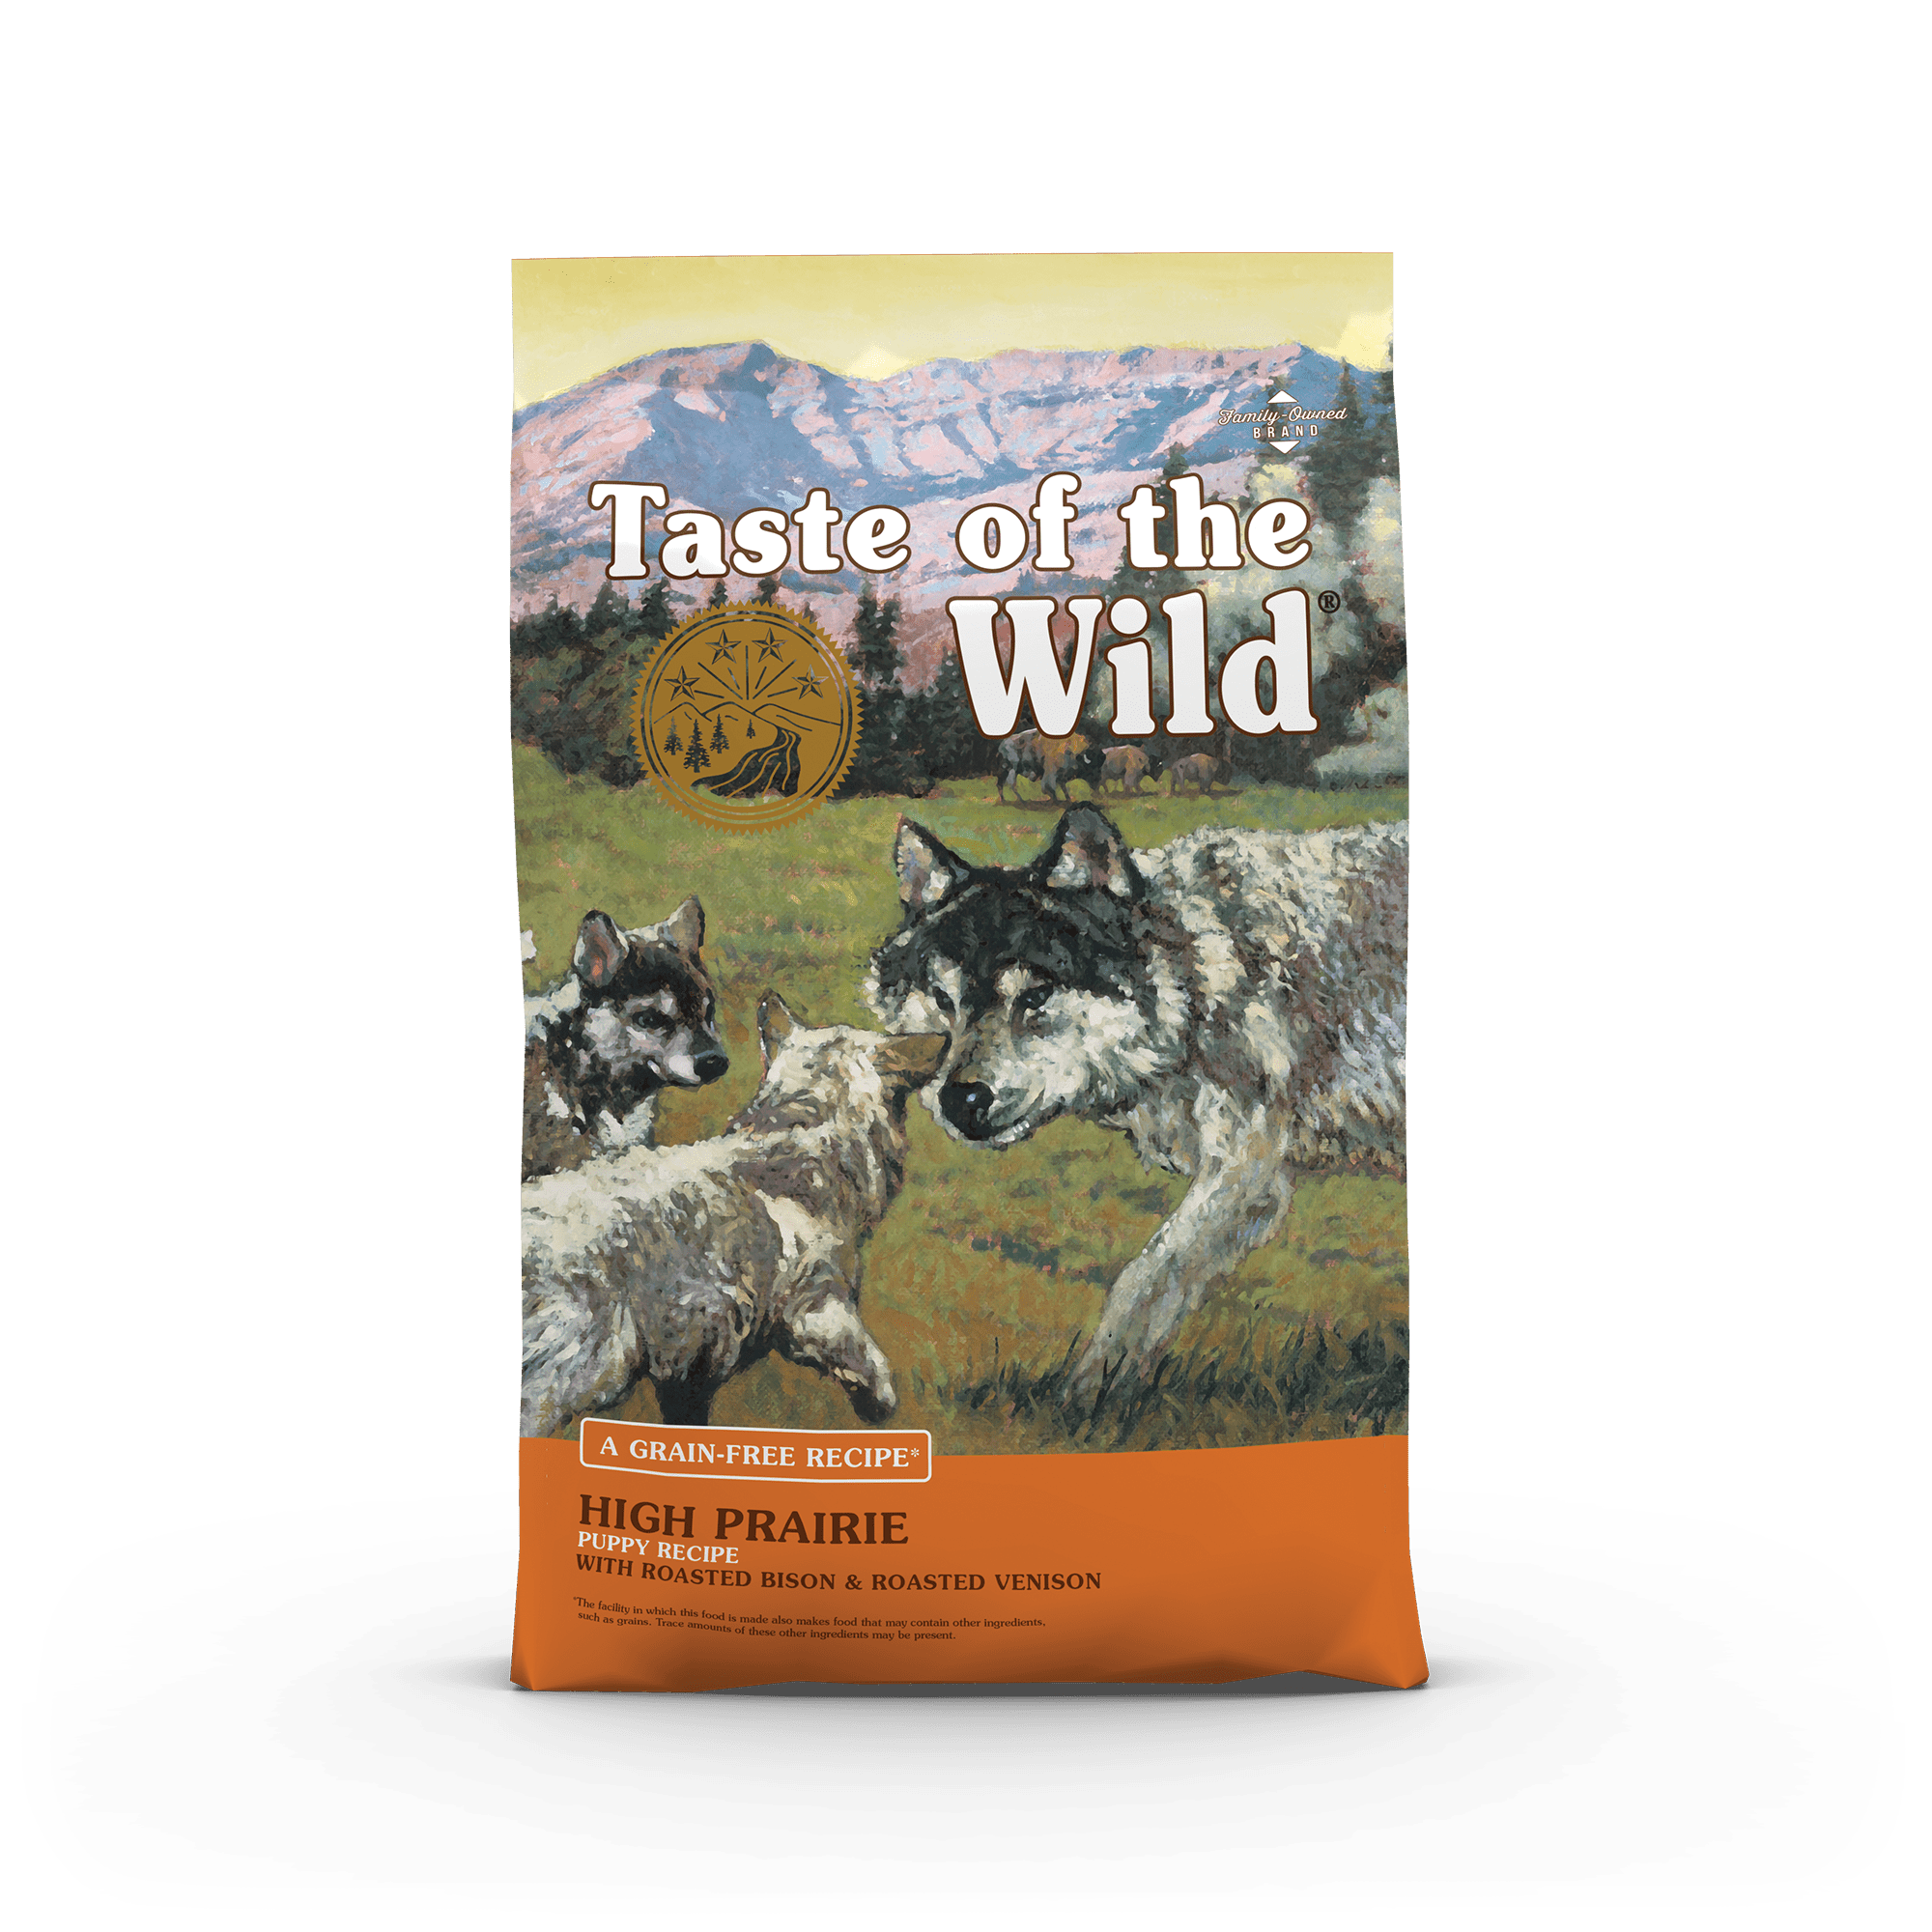 Taste Of The Wild, Taste Of The Wild High Prairie Puppy Recipe 5 Pound Bag